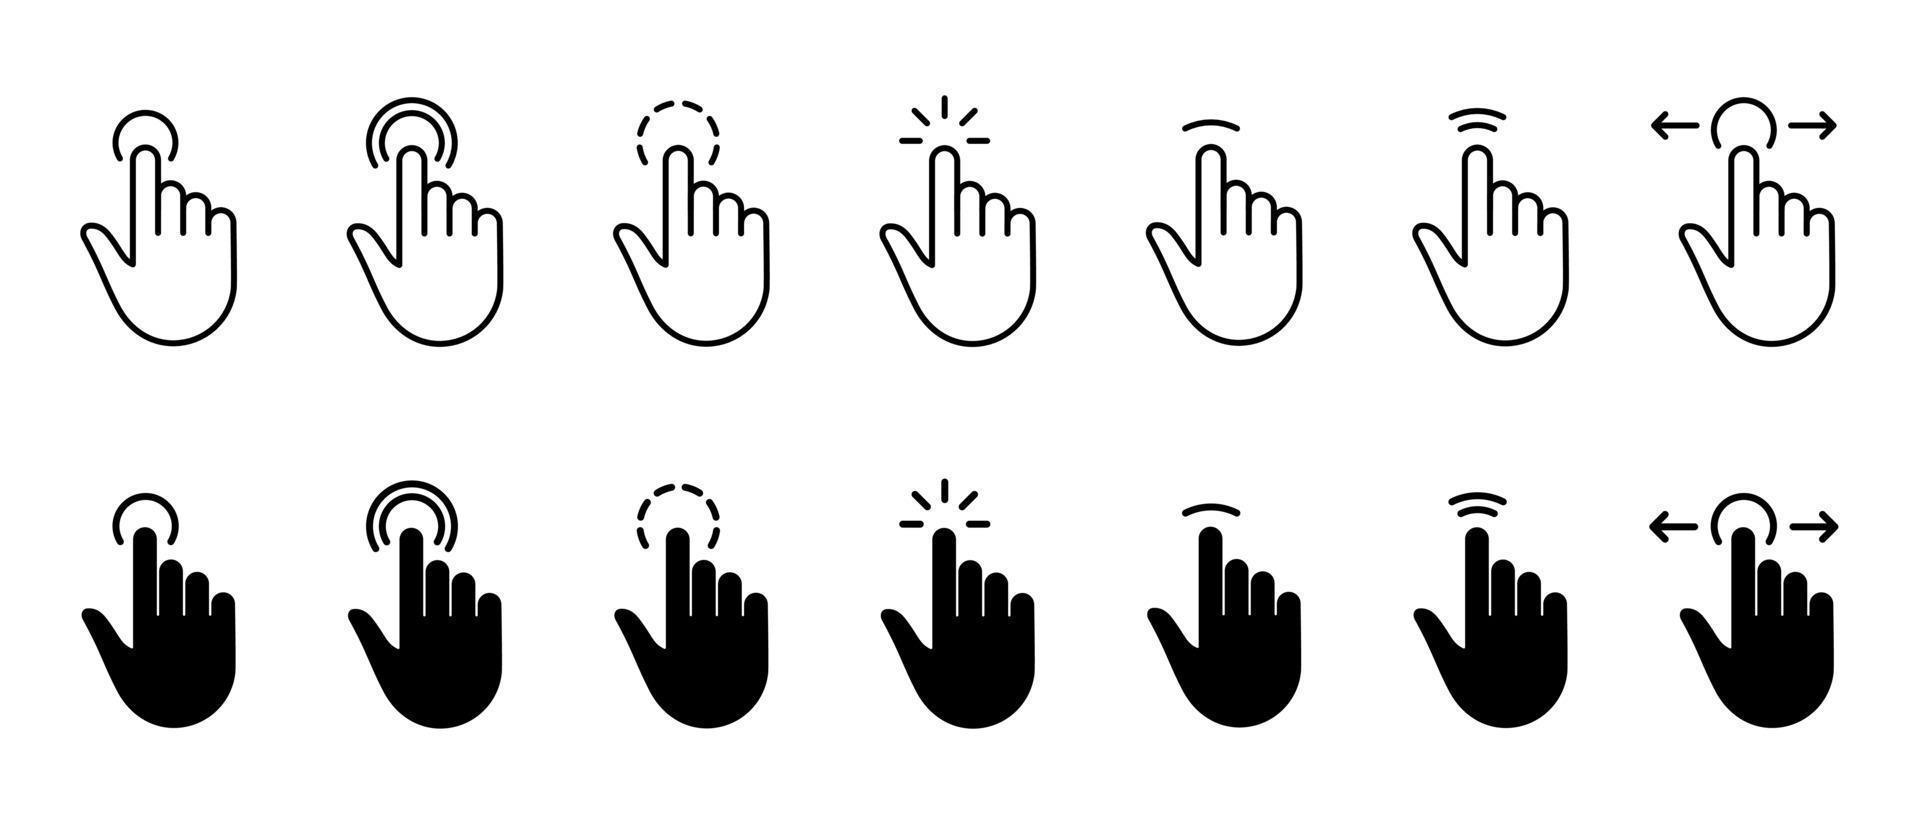 línea de dedo del cursor del ratón del ordenador y conjunto de iconos de silueta. gesto de puntero de mano en el conjunto de pictogramas negros del sitio web. haga clic en presione toque dos veces toque el signo de punto de deslizamiento. ilustración vectorial aislada. vector